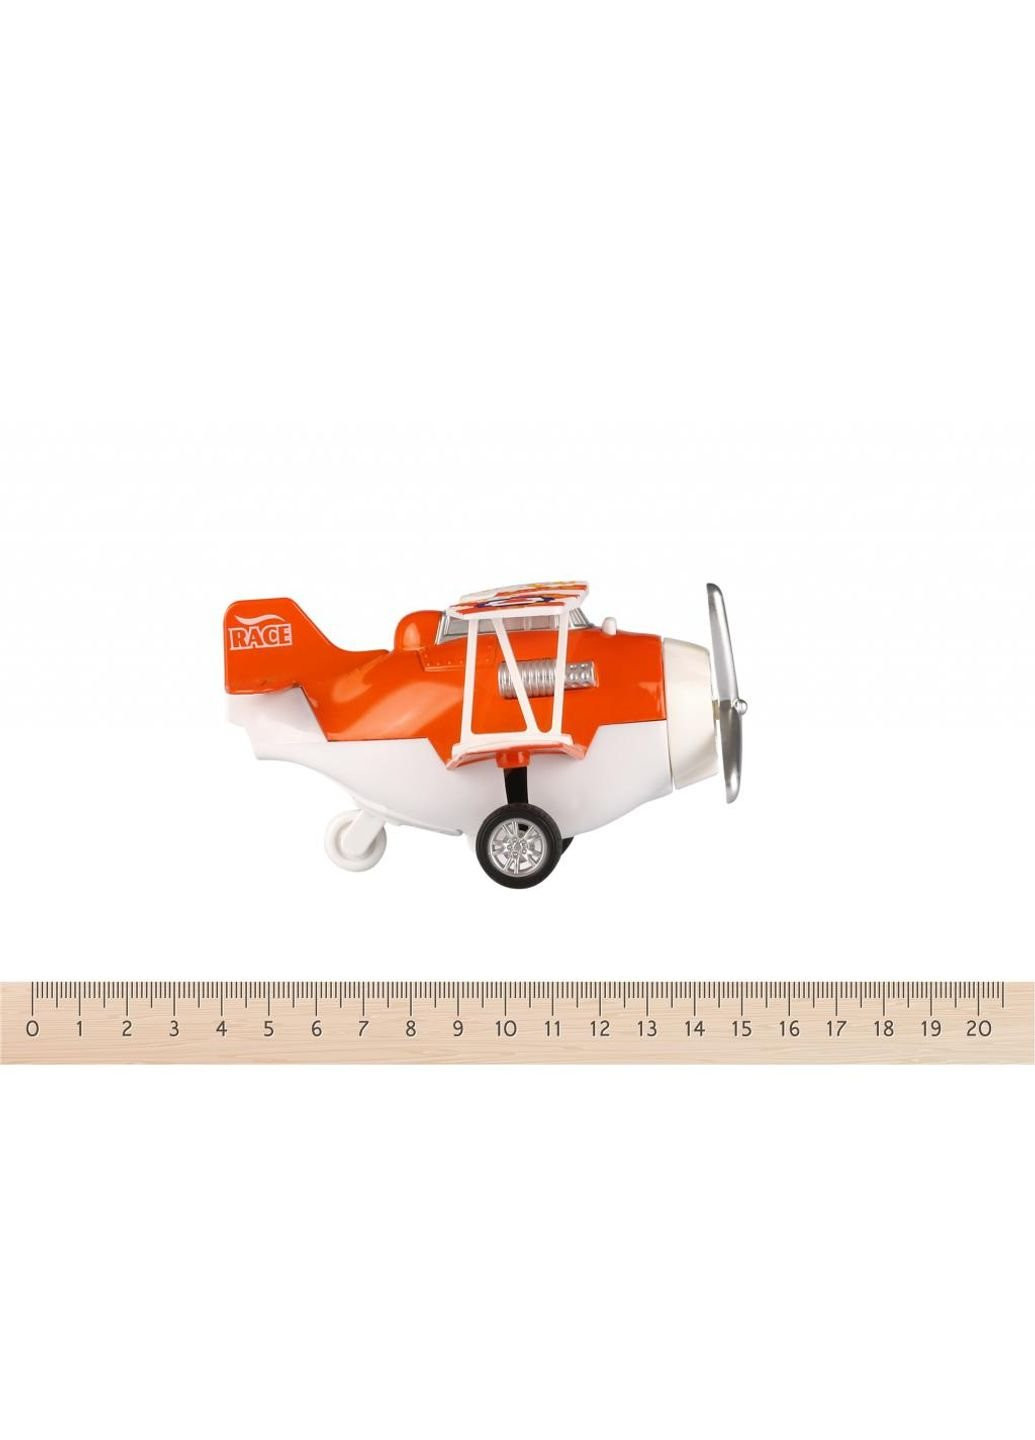 Спецтехника Самолет металический инерционный Aircraft оранжевый со свето (SY8012Ut-1) Same Toy (254075960)